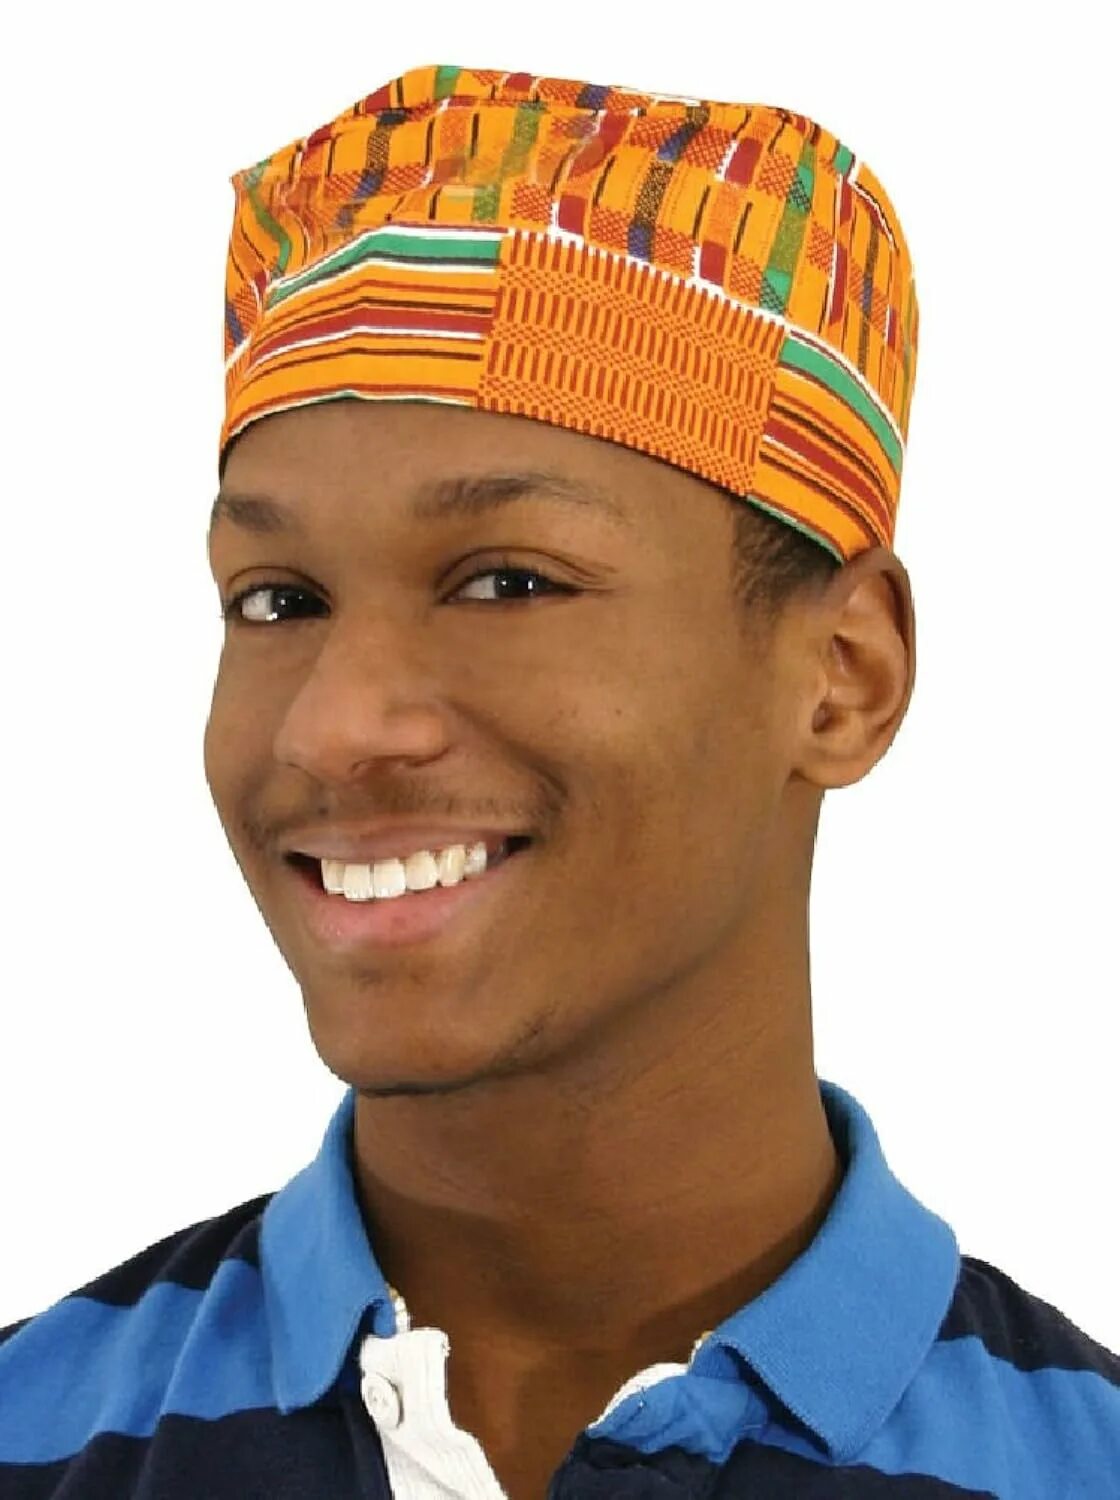 Национальный головной убор мужчин. Африканская шапочка куфия. Африканский головной убор мужской. Национальные шапки. Африканская шапка мужская.